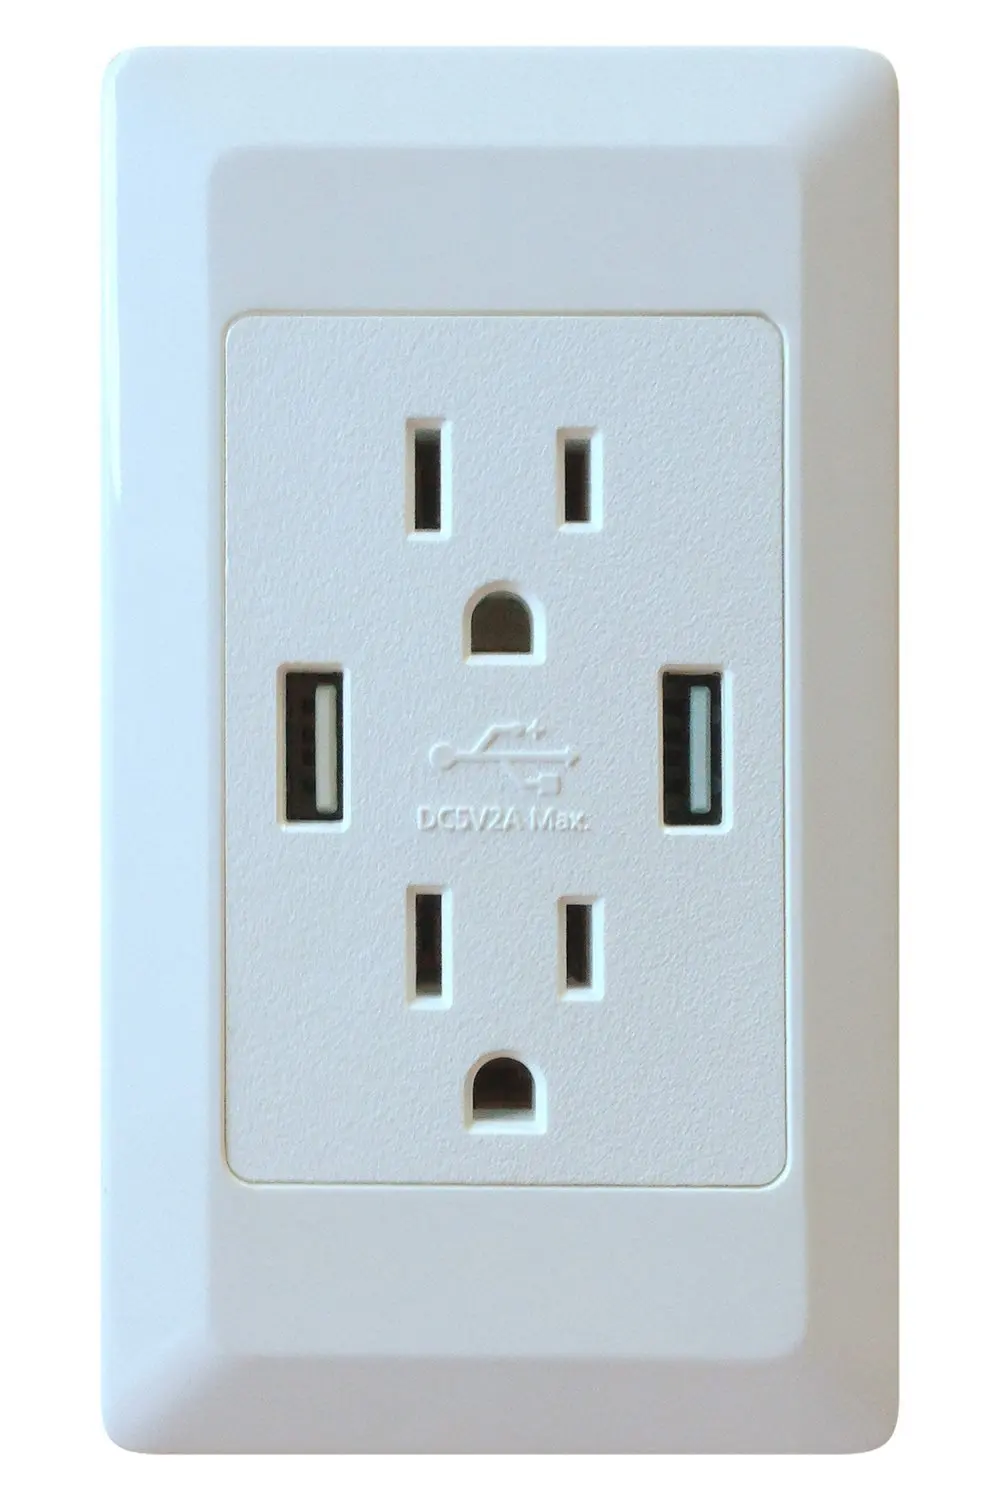 rv 120 volt outlet